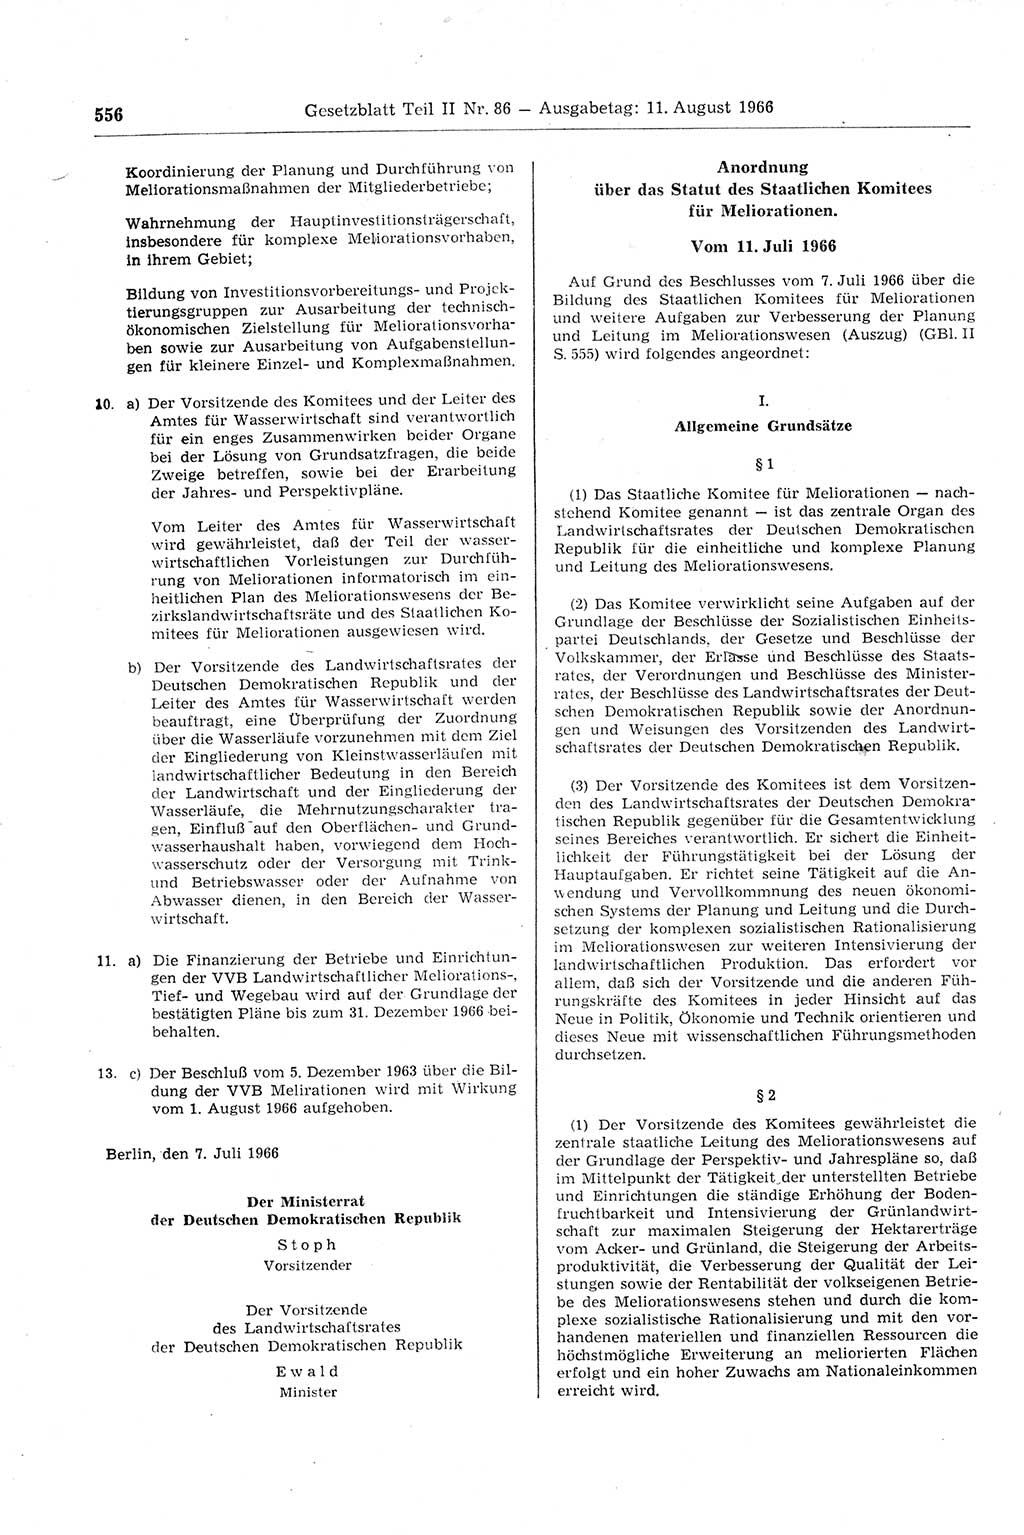 Gesetzblatt (GBl.) der Deutschen Demokratischen Republik (DDR) Teil ⅠⅠ 1966, Seite 556 (GBl. DDR ⅠⅠ 1966, S. 556)